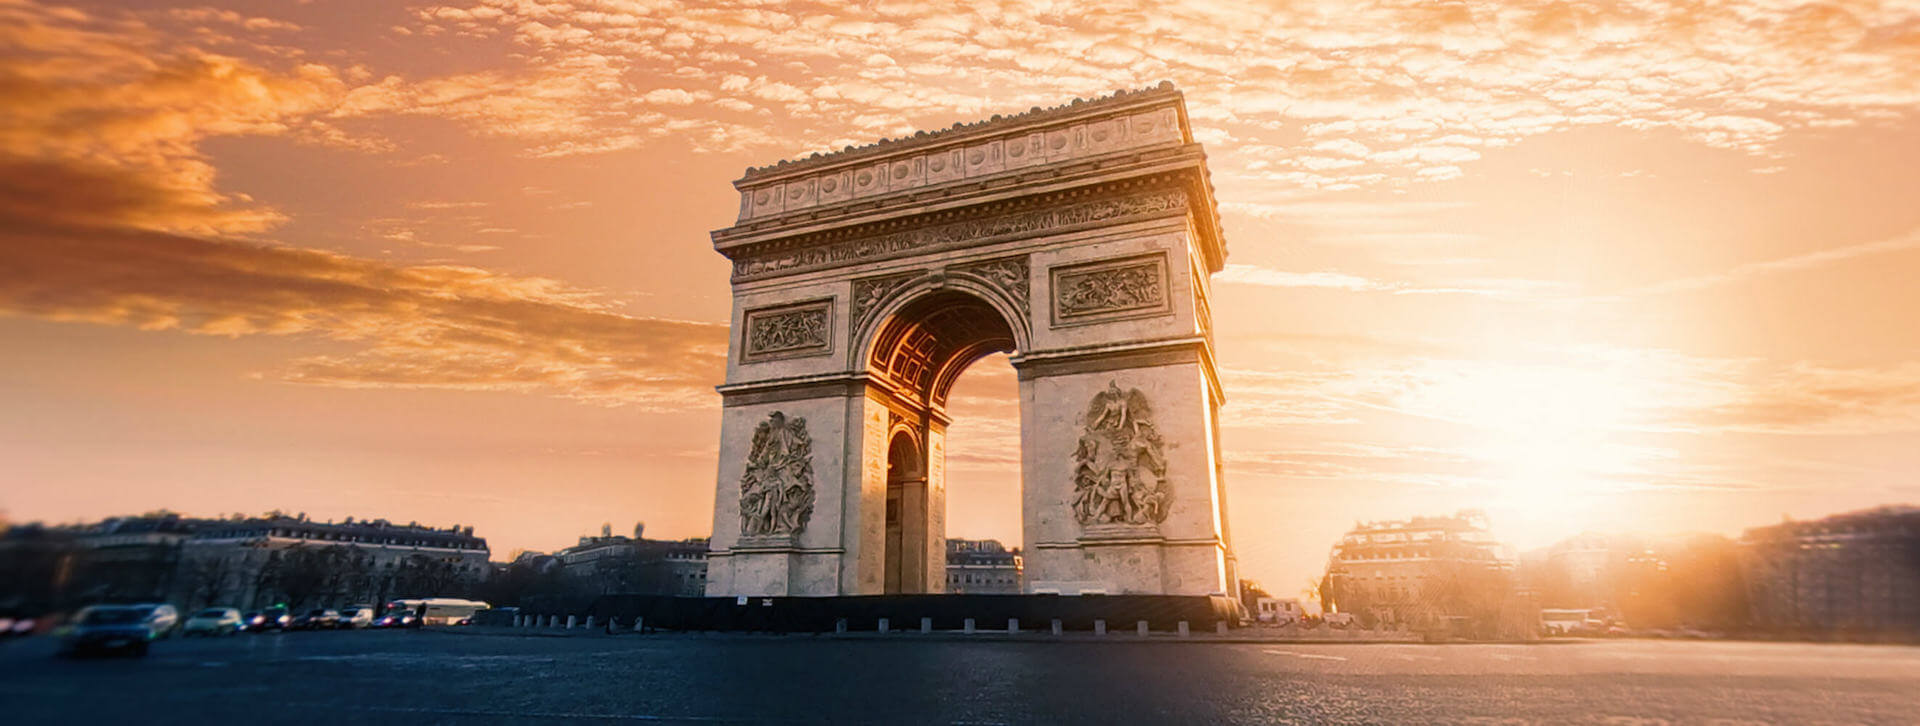 Arc de triomphe Paris France